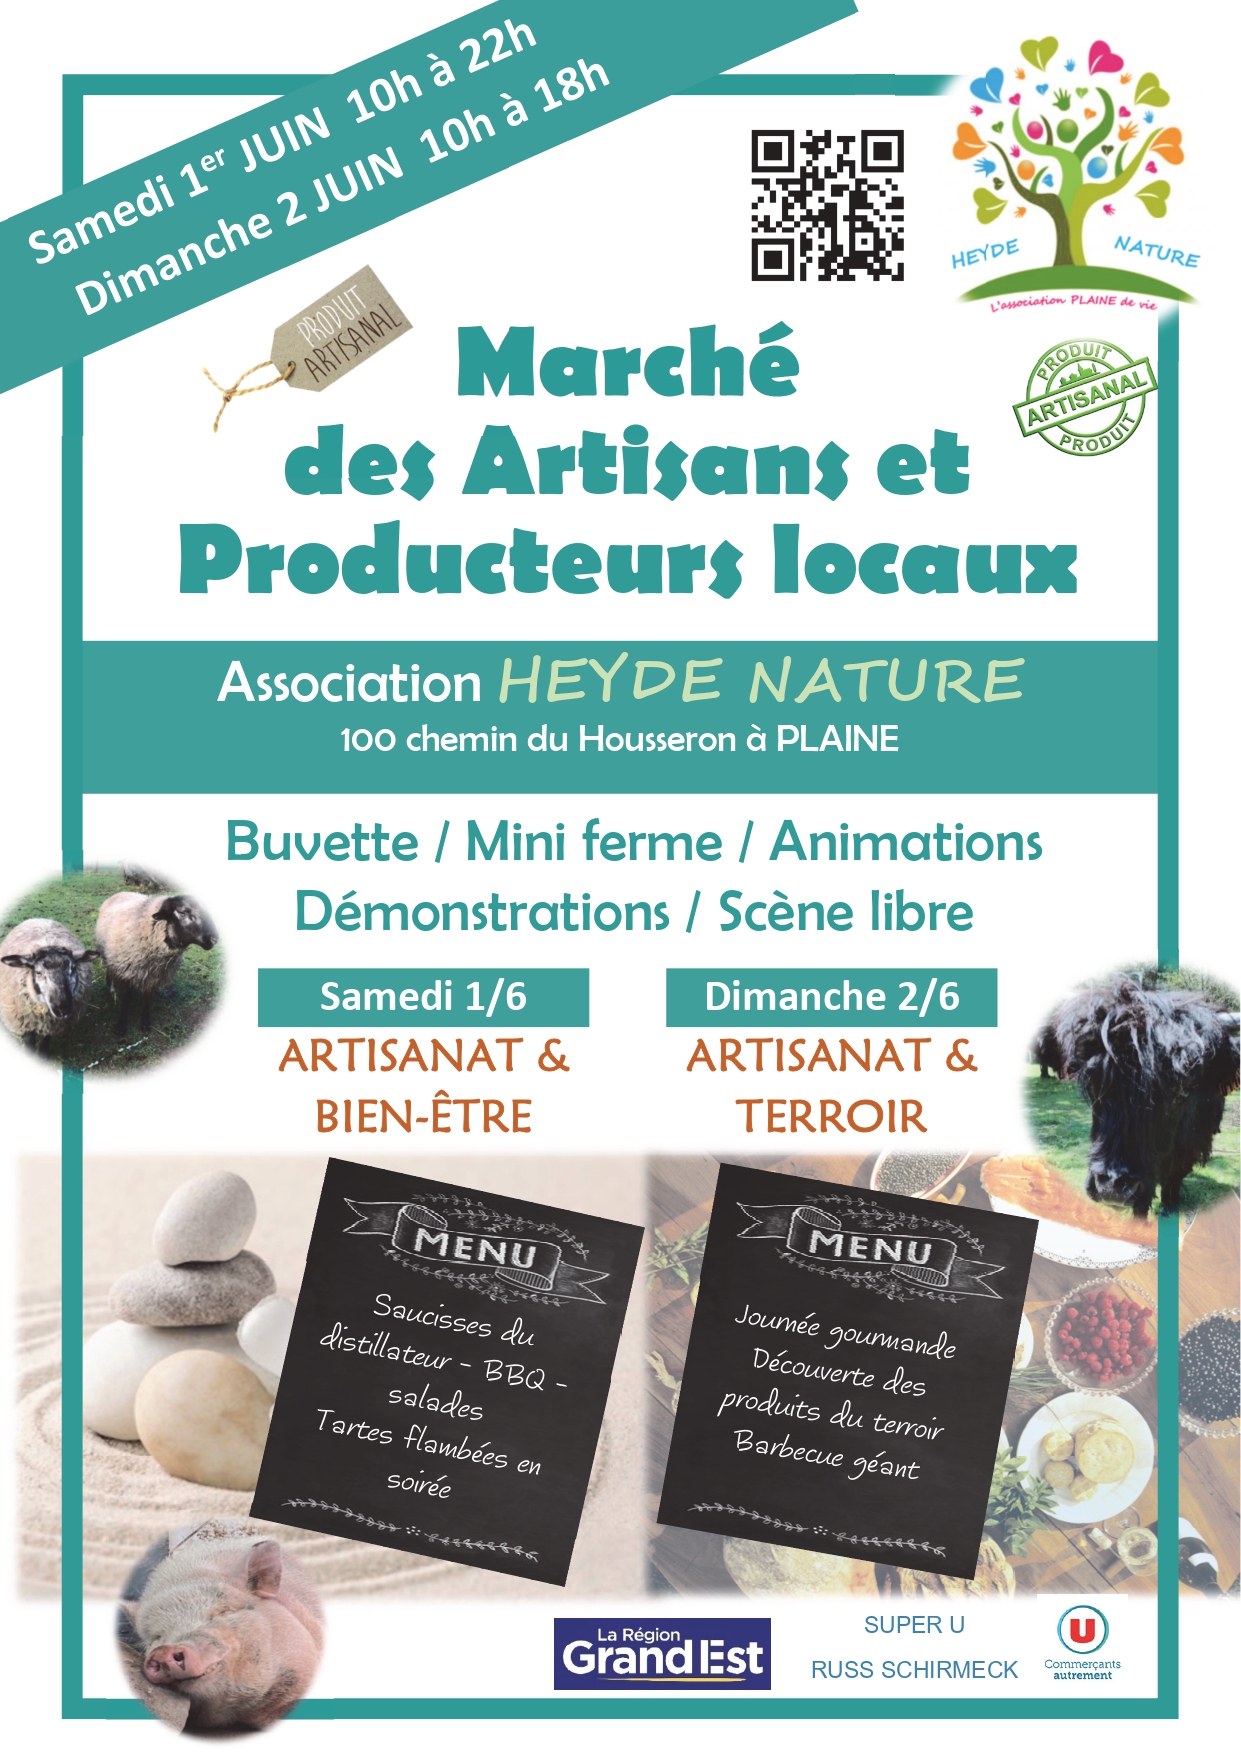 Marché des Artisans et Producteurs locaux @ Association Heydé Nature | Plaine | Grand Est | France